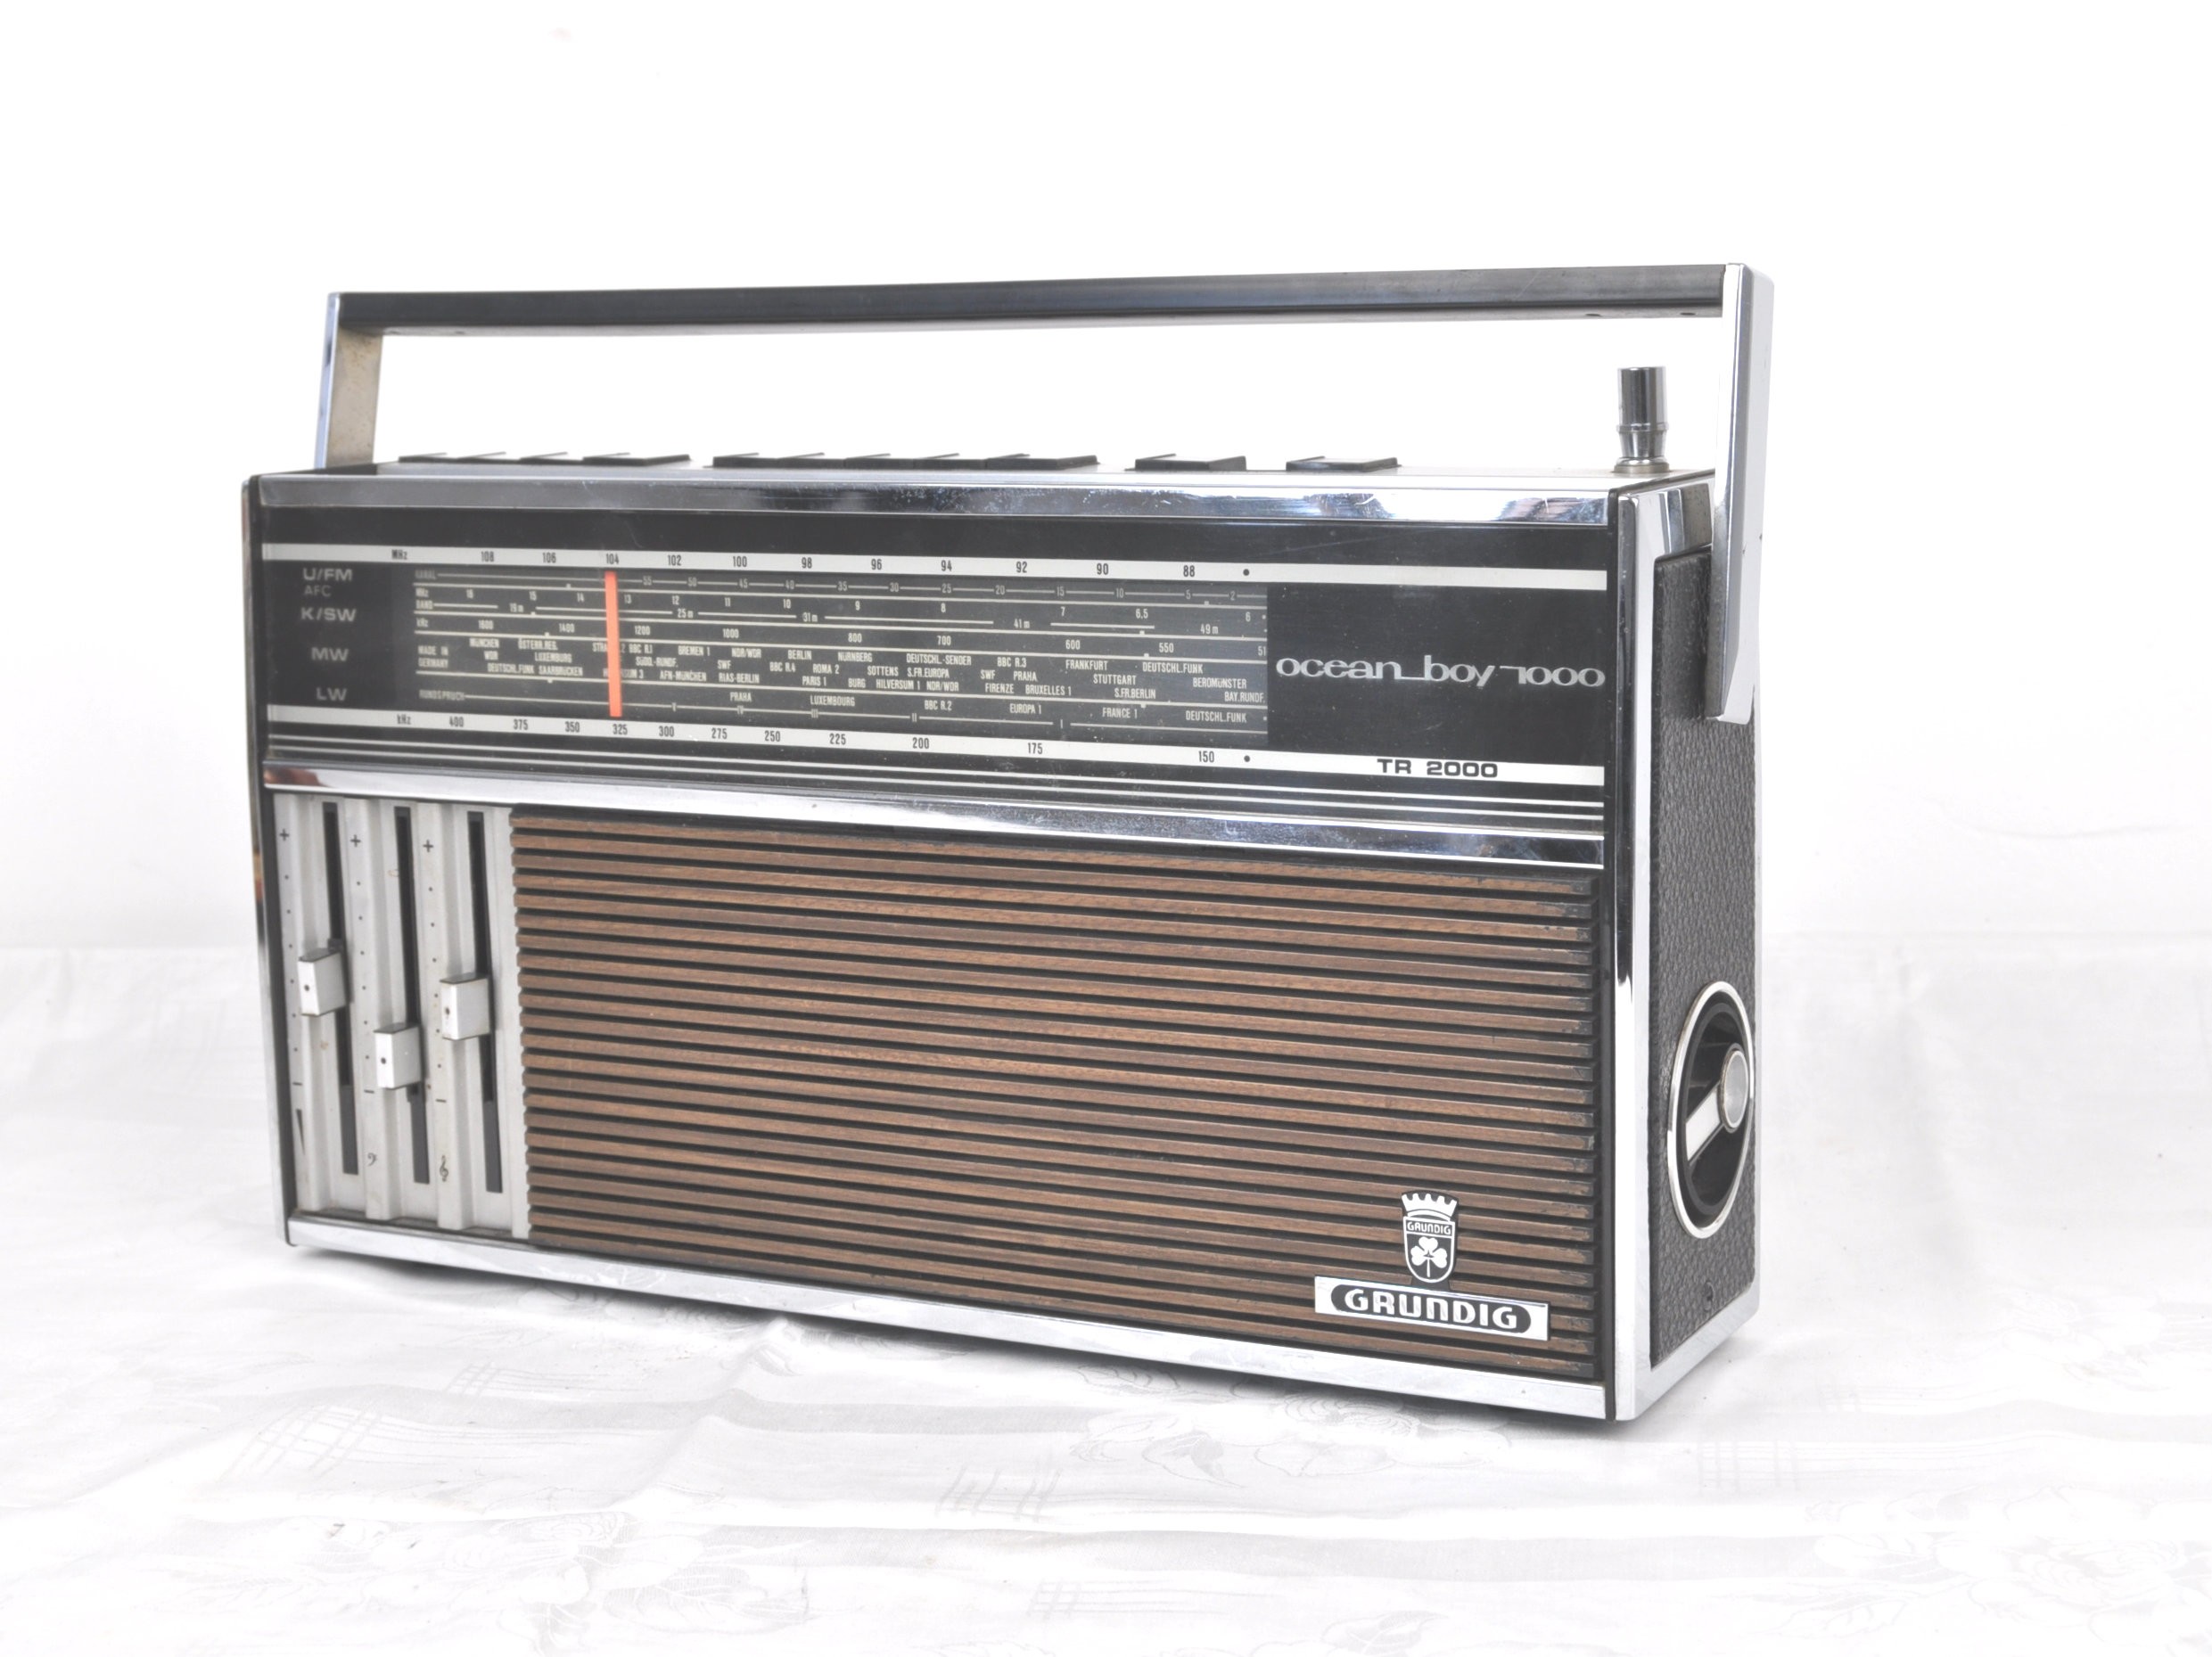 Kofferradio Grundig Ozean Boy 1000 TR 2000 (Volkskunde- und Freilichtmuseum Roscheider Hof CC0)